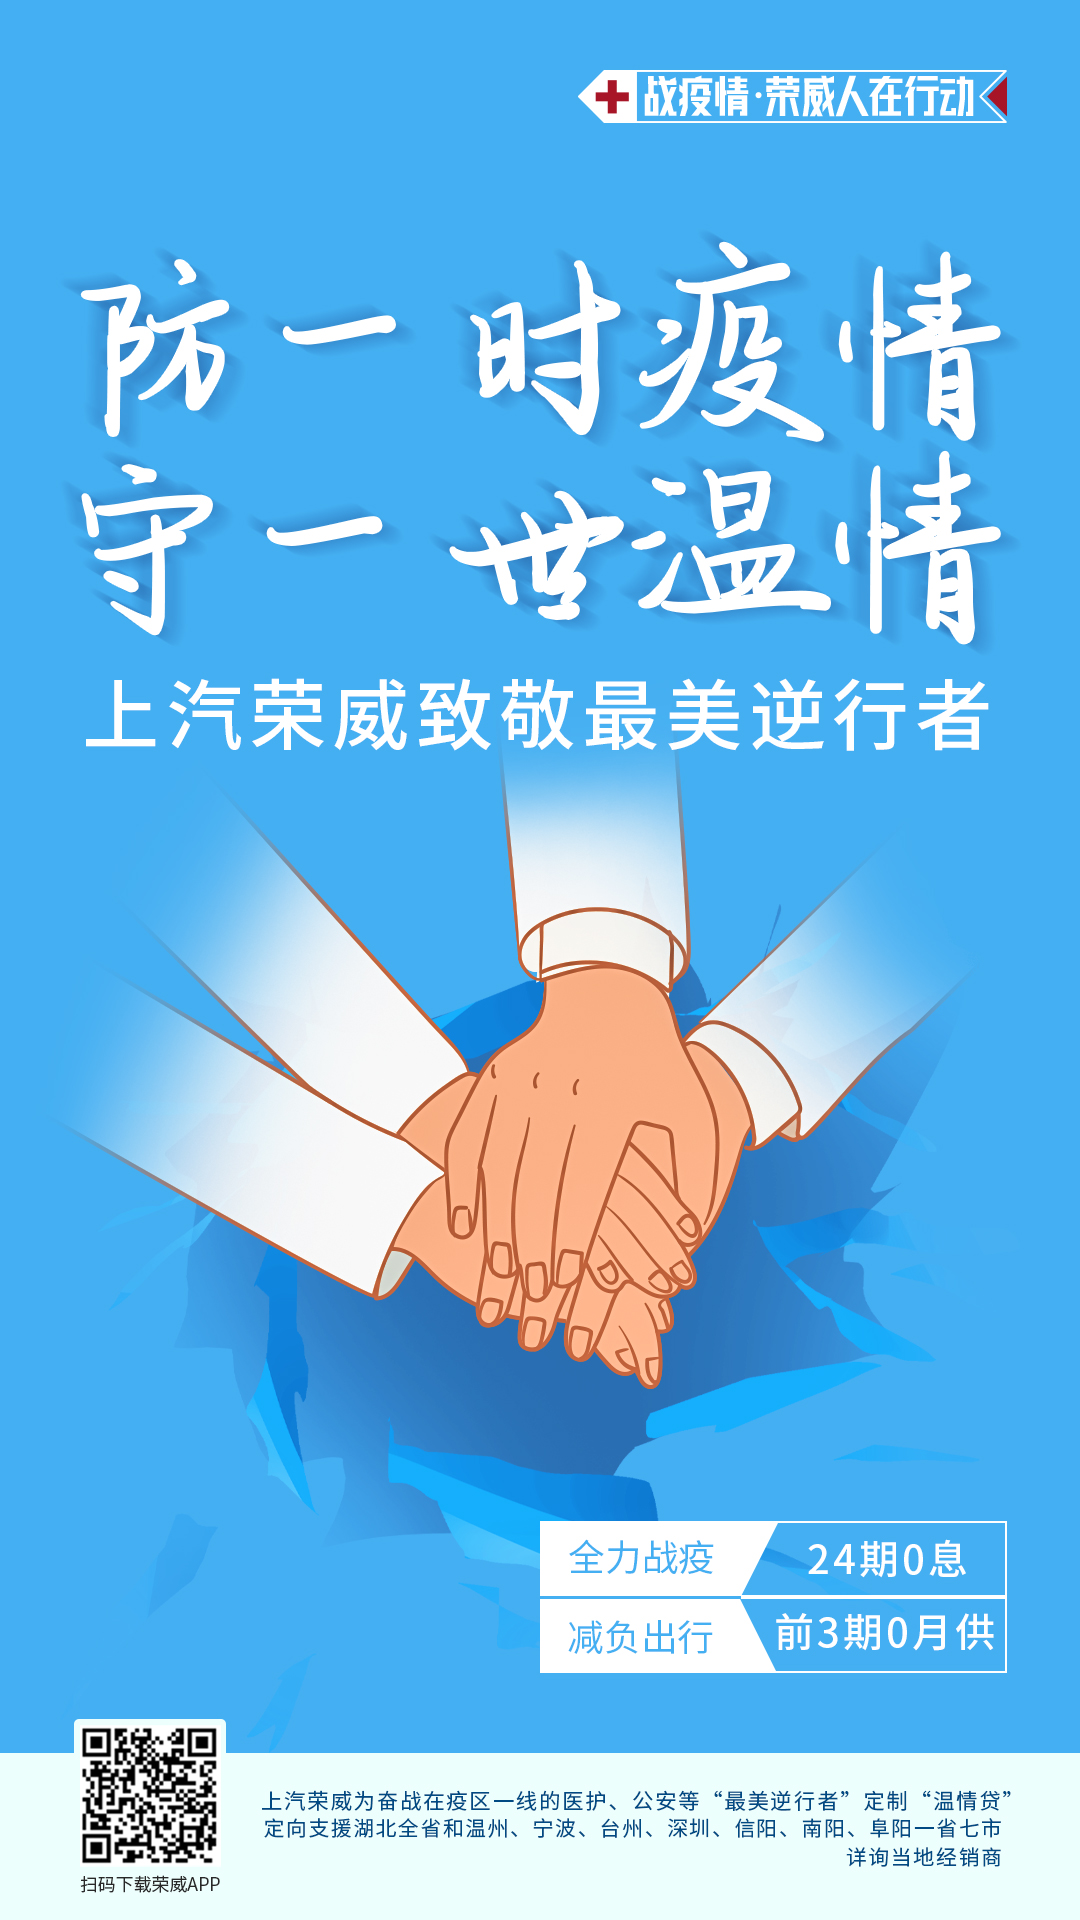 荣威温情贷服务海报.jpeg